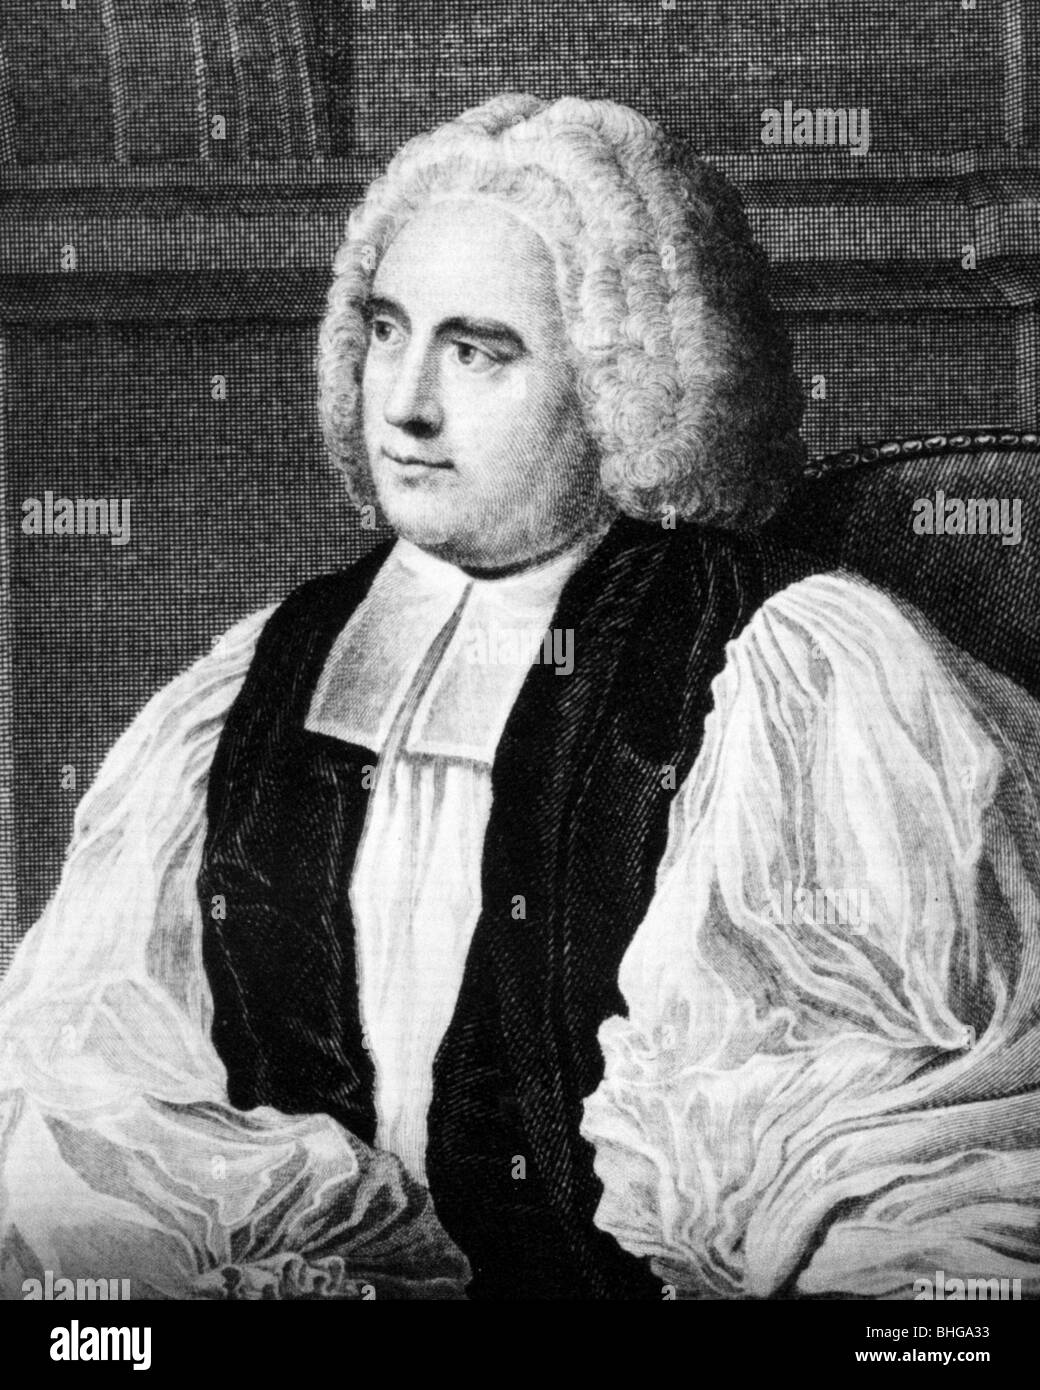 GEORGE BERKELEY - Irish évêque anglican et philosophe (1685-1753) Banque D'Images